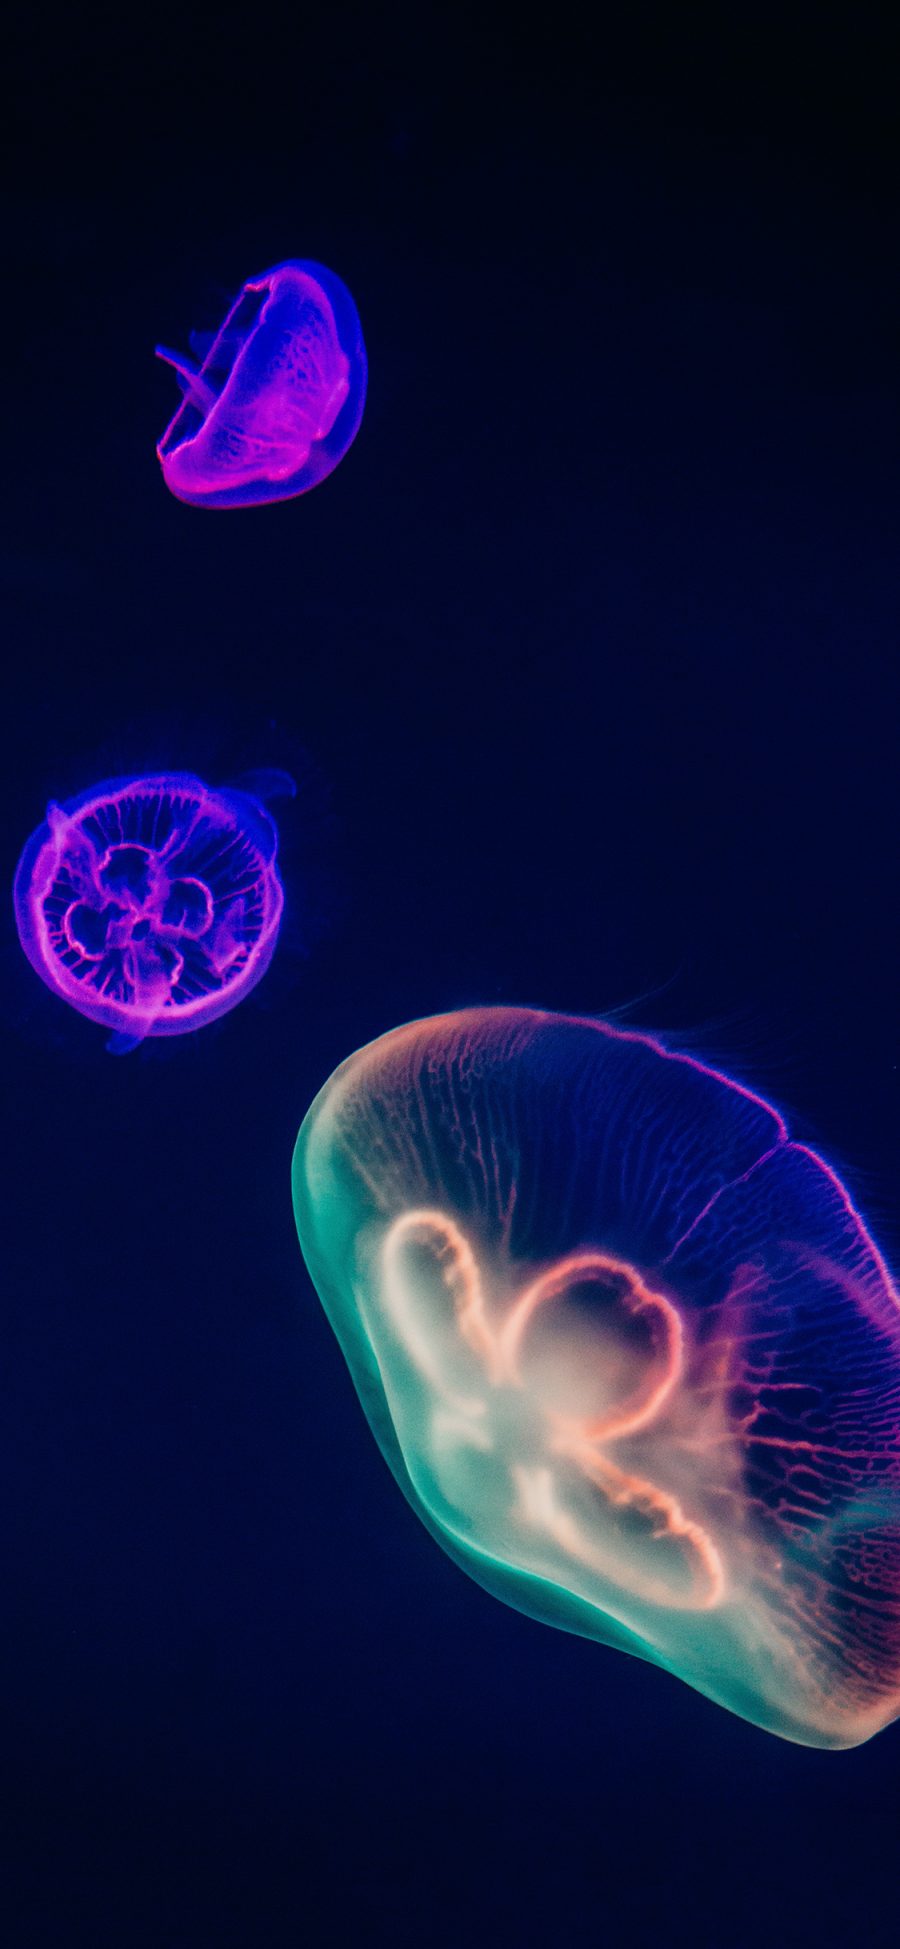 [2436×1125]水母 荧光 观赏性 浮游 苹果手机壁纸图片